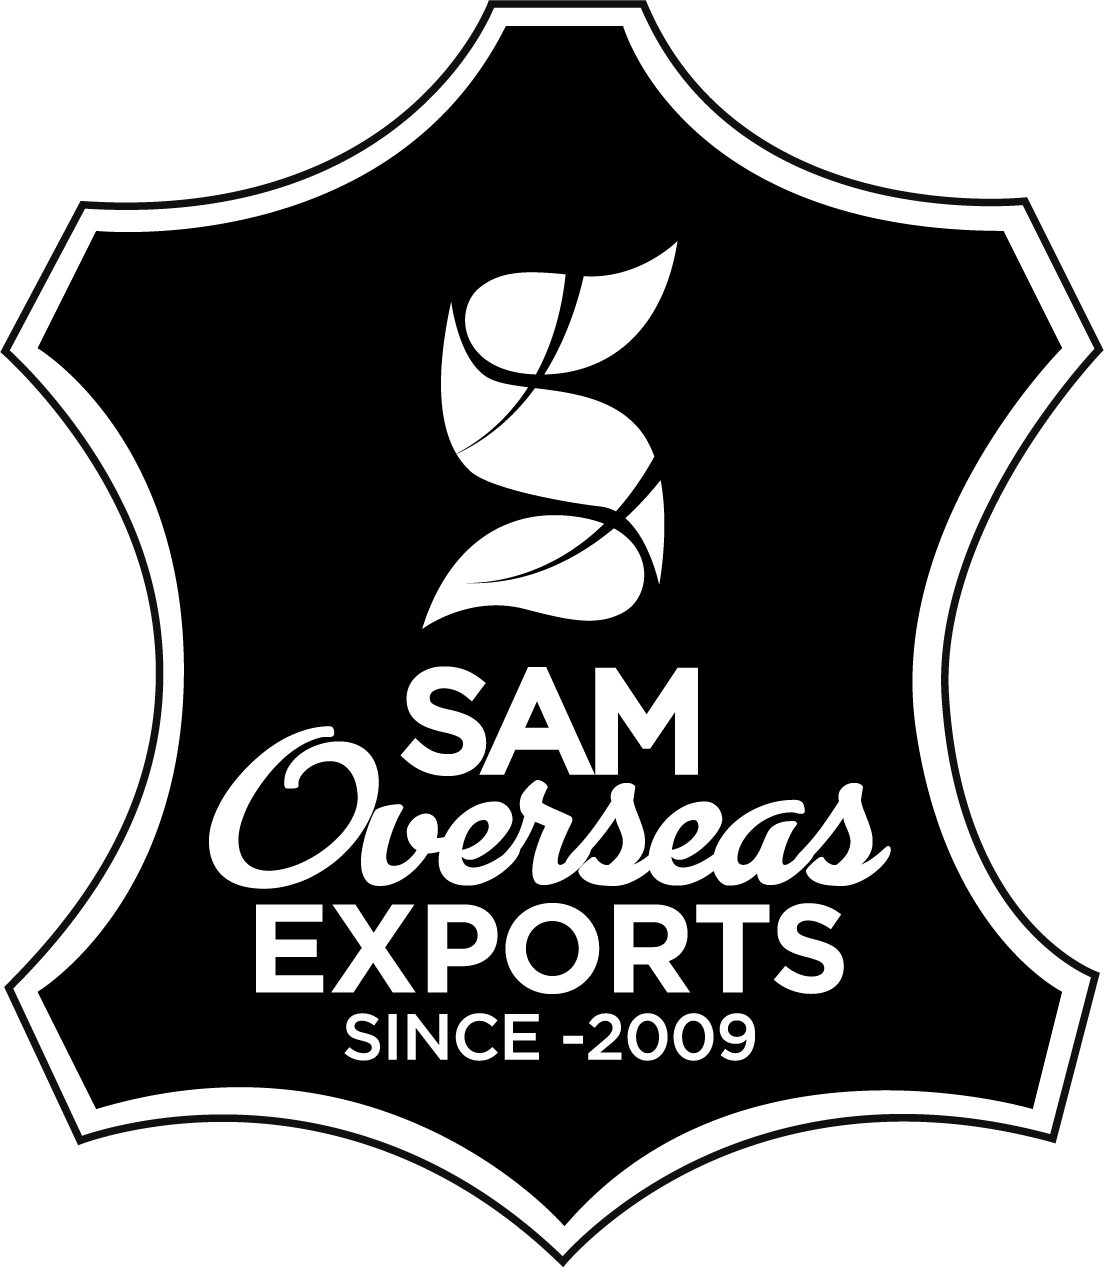 Samoverseasexports